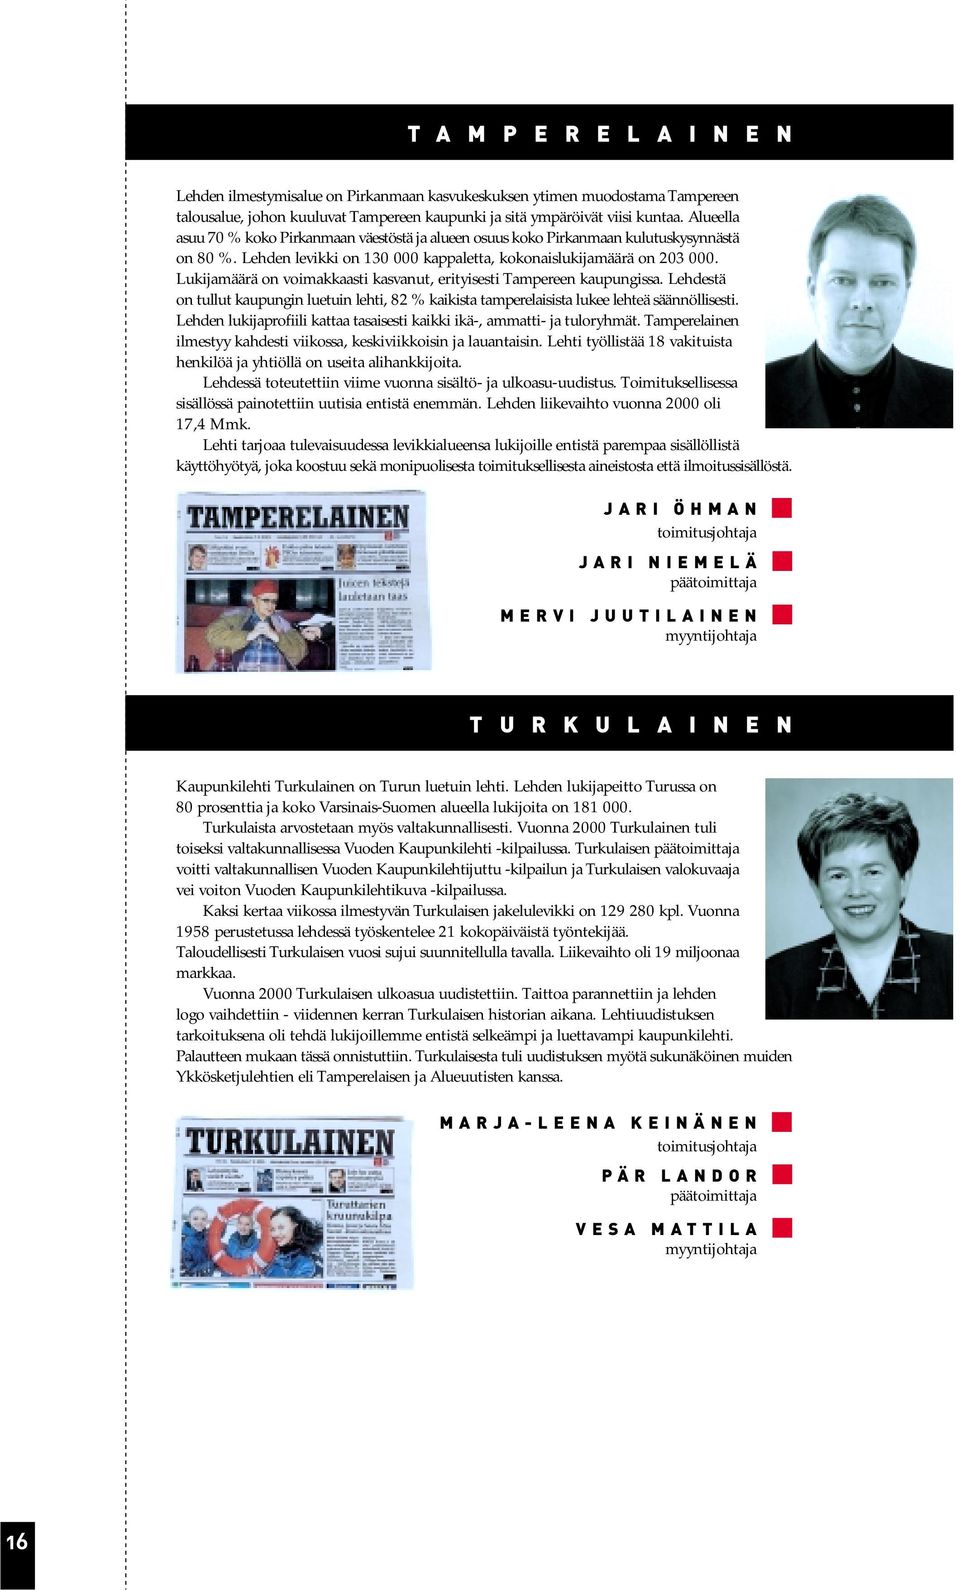 Lukijamäärä on voimakkaasti kasvanut, erityisesti Tampereen kaupungissa. Lehdestä on tullut kaupungin luetuin lehti, 82 % kaikista tamperelaisista lukee lehteä säännöllisesti.